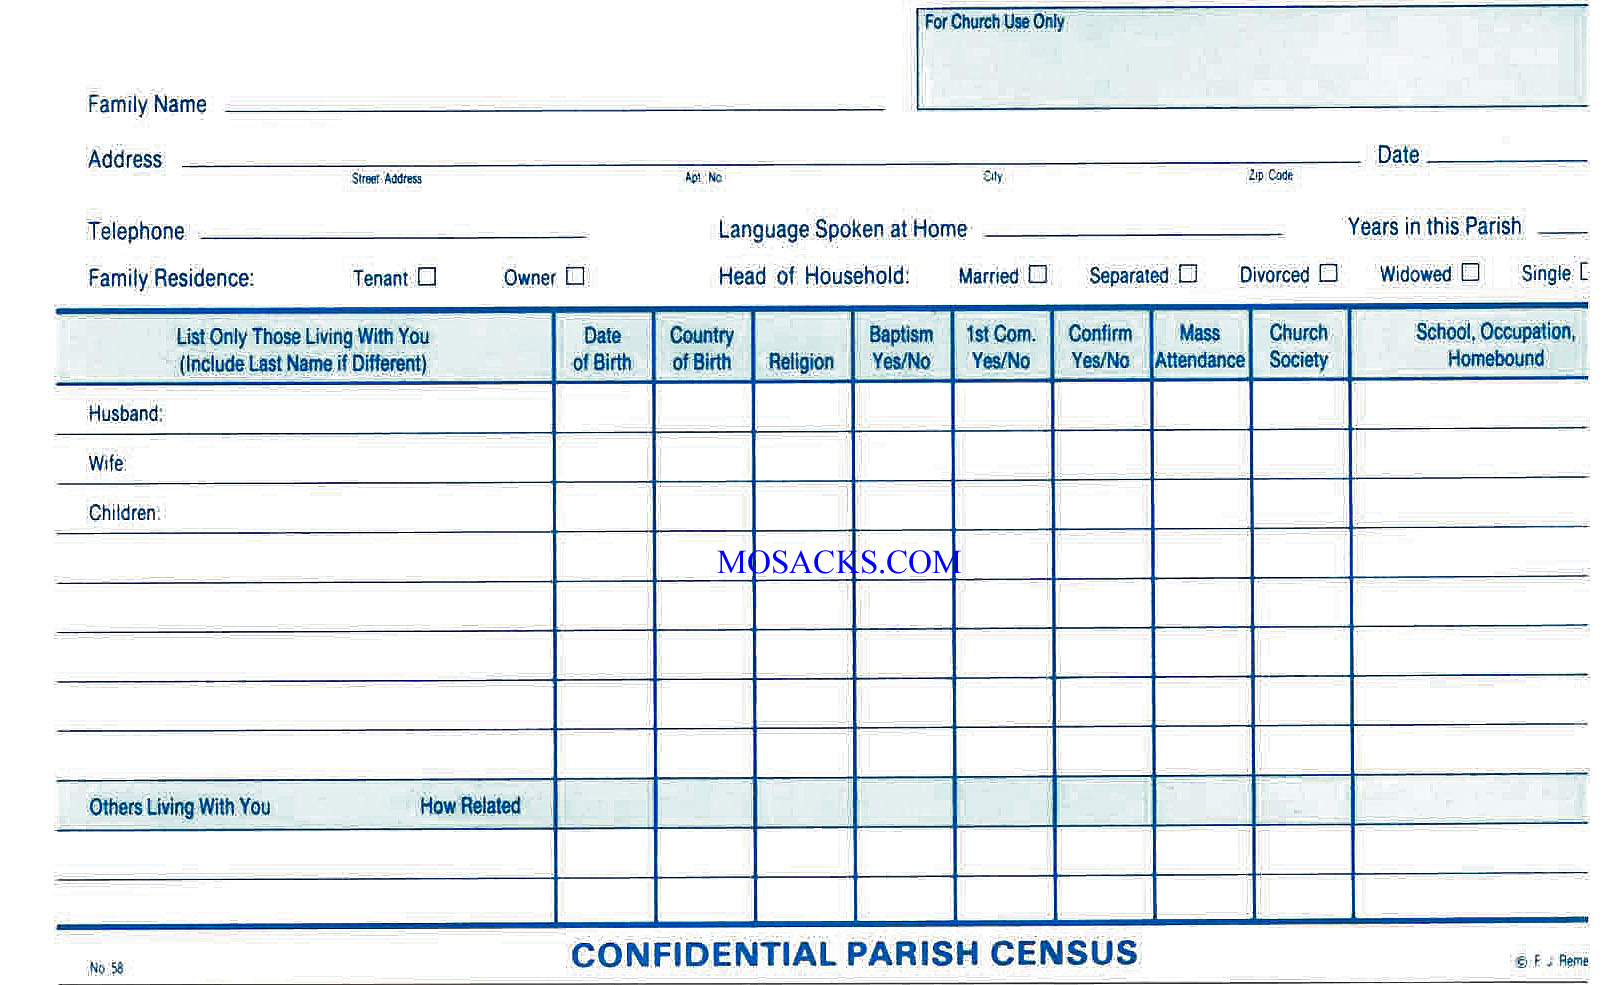 Parish Census Card No. 58